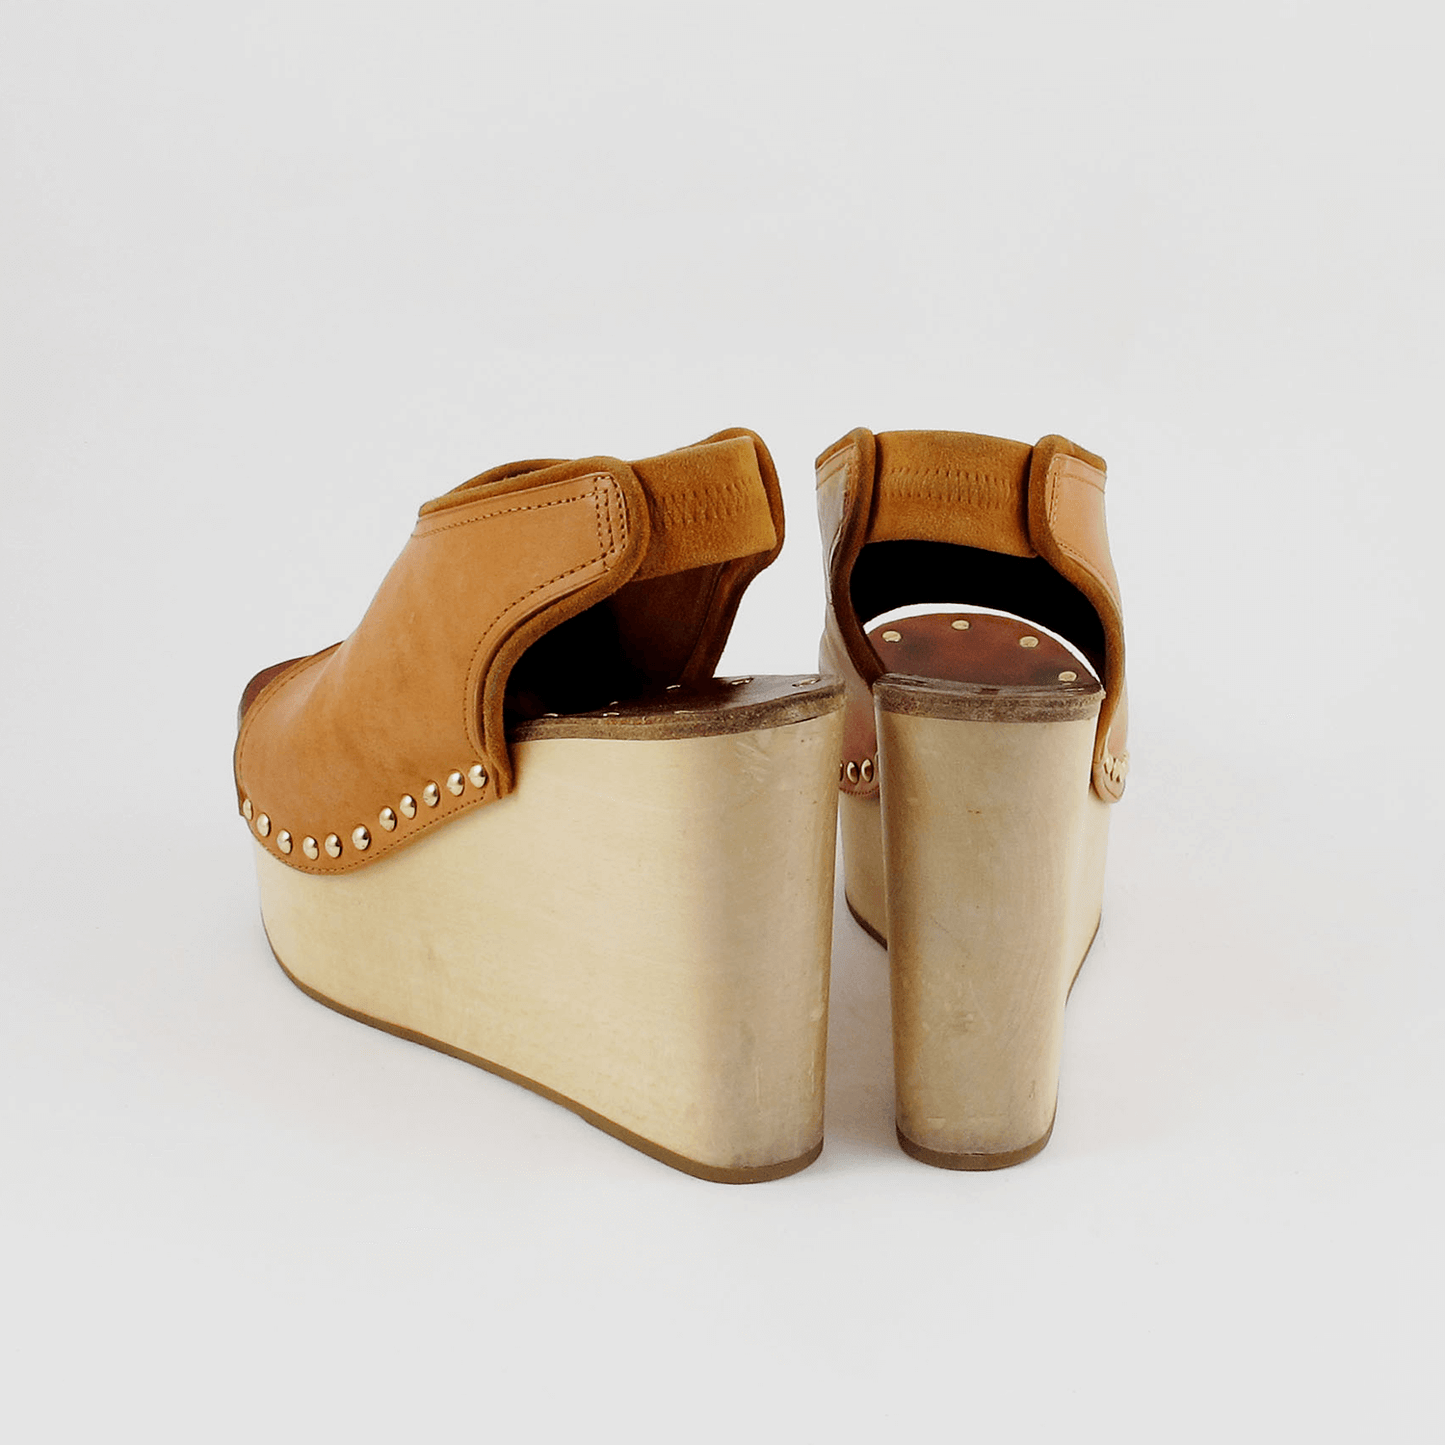 brandsamsara-celine-shoes